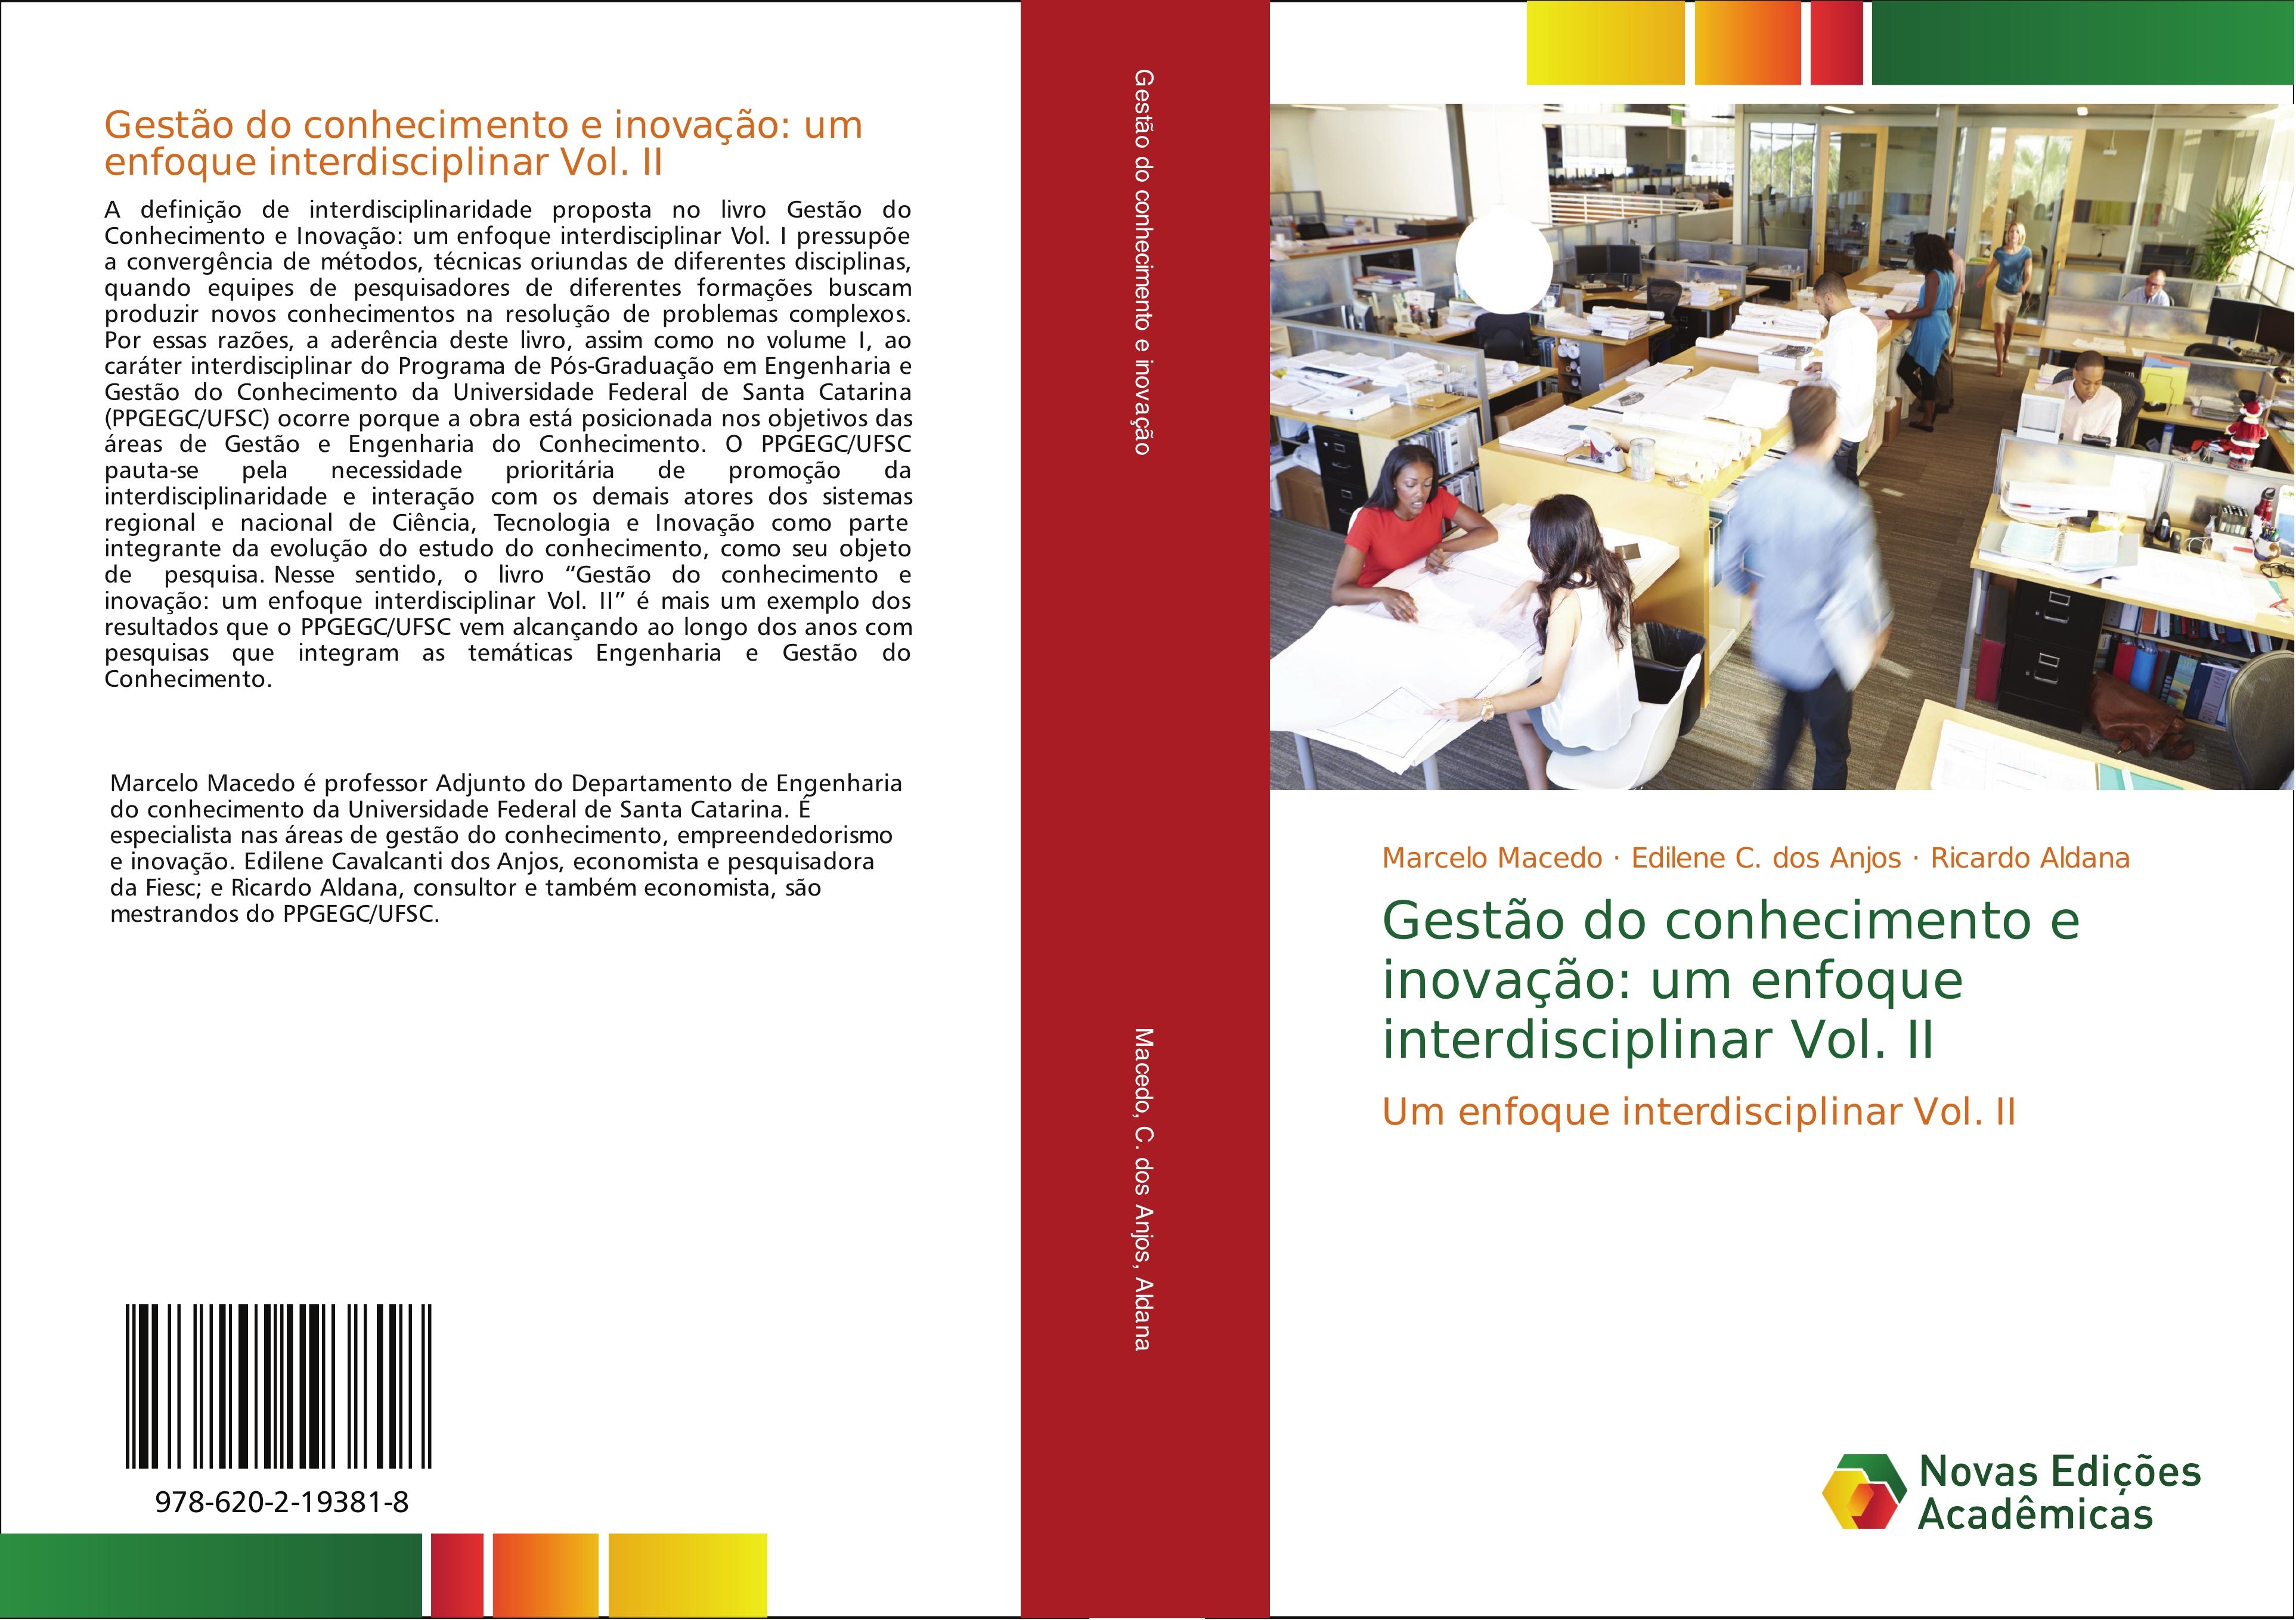 Gestão do conhecimento e inovação: um enfoque interdisciplinar Vol. II - Marcelo Macedo Edilene C. dos Anjos Ricardo Aldana